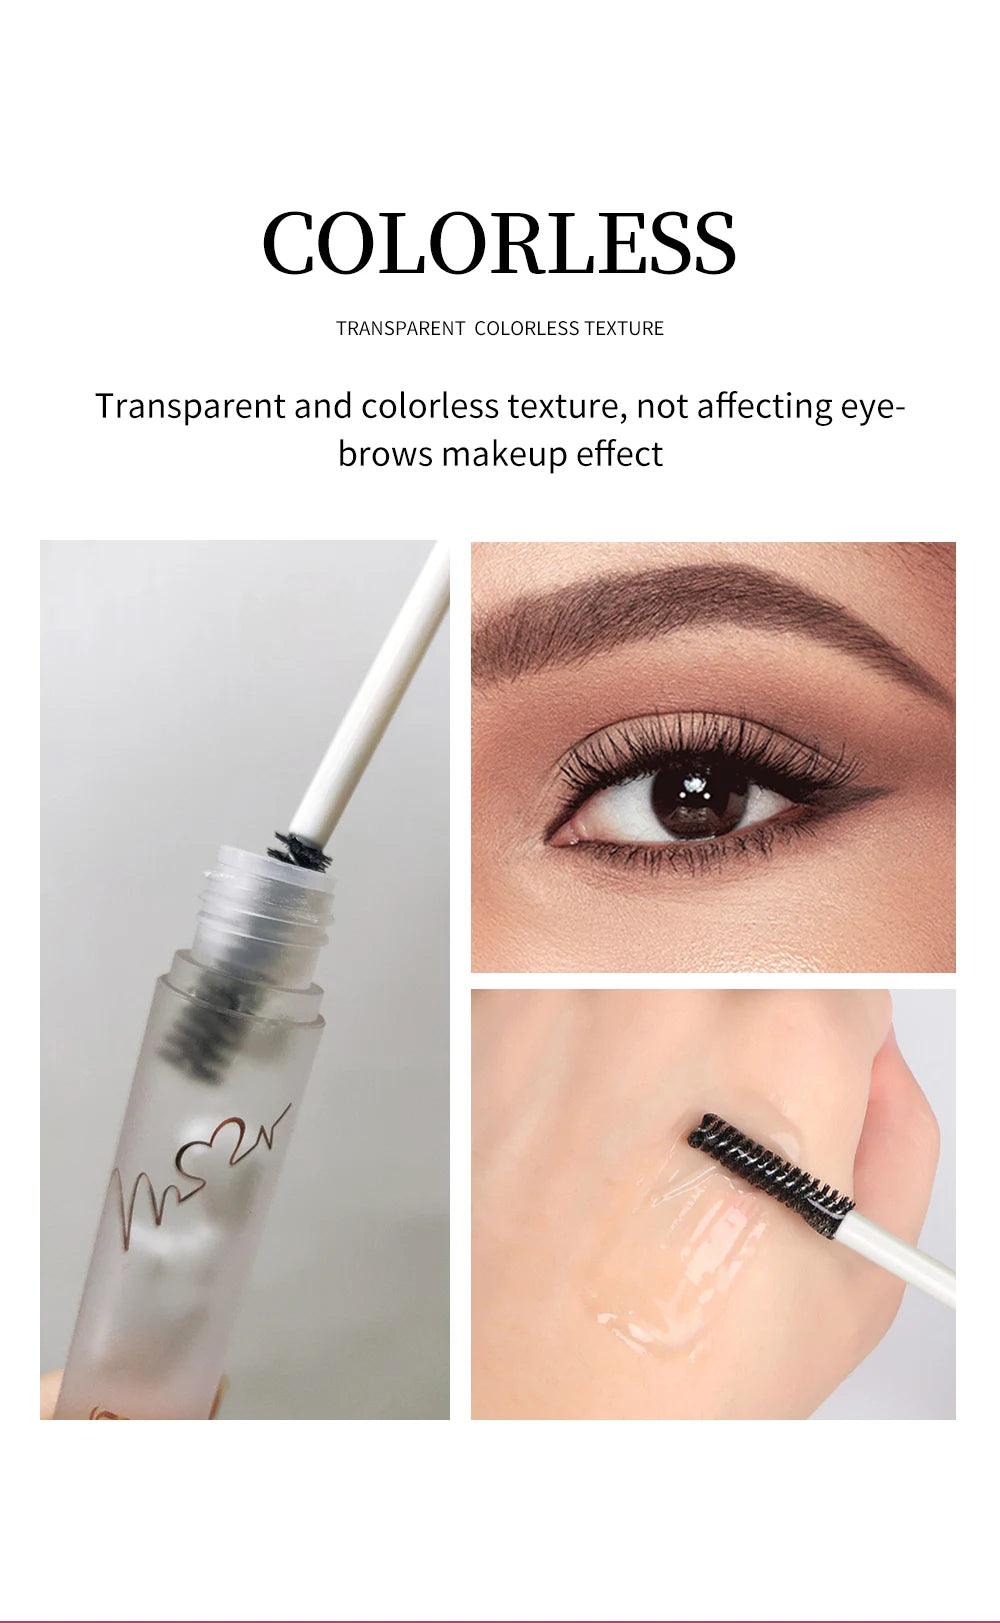 QIBEST Waterproof Eyebrow Styling Gel: Colorless & Repairing